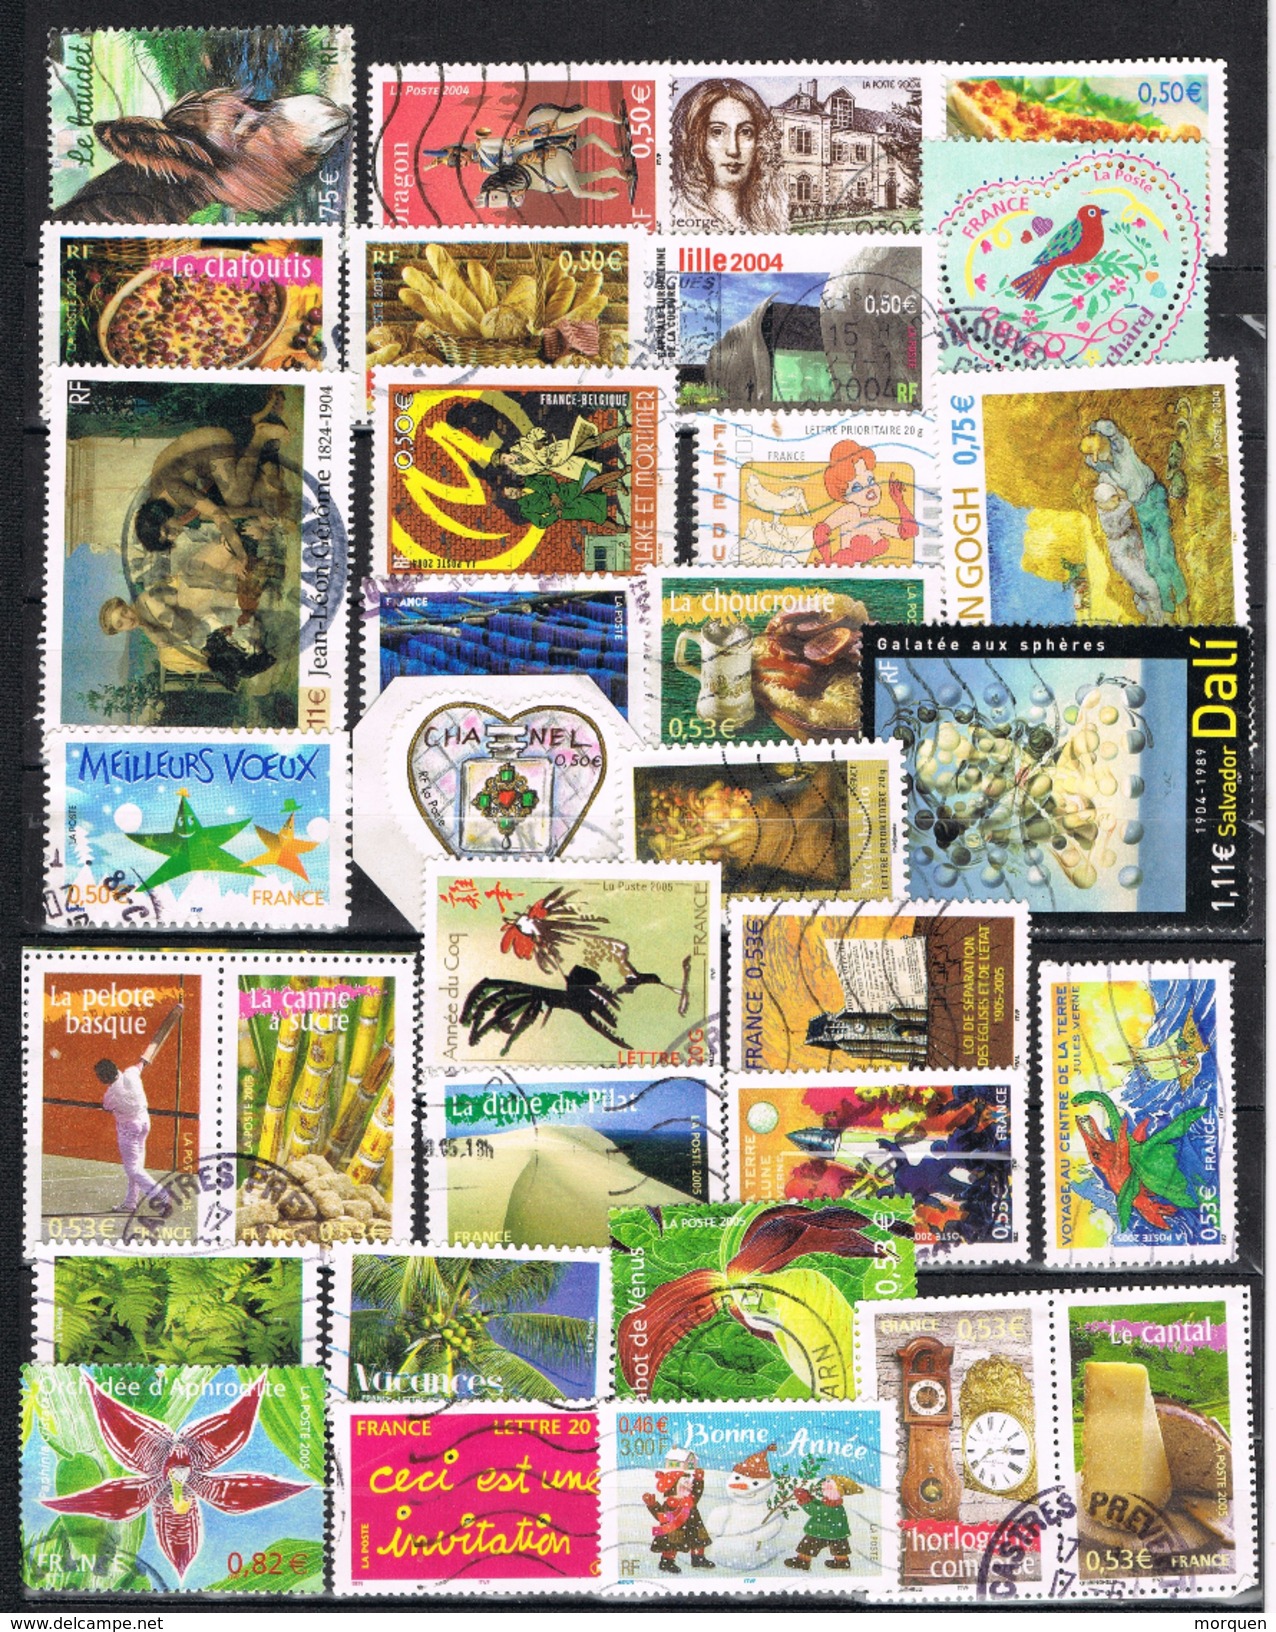 22011. Resto de coleccion FRANCIA en euros, 343 sellos, año 1999-2010 (9 scans)  º